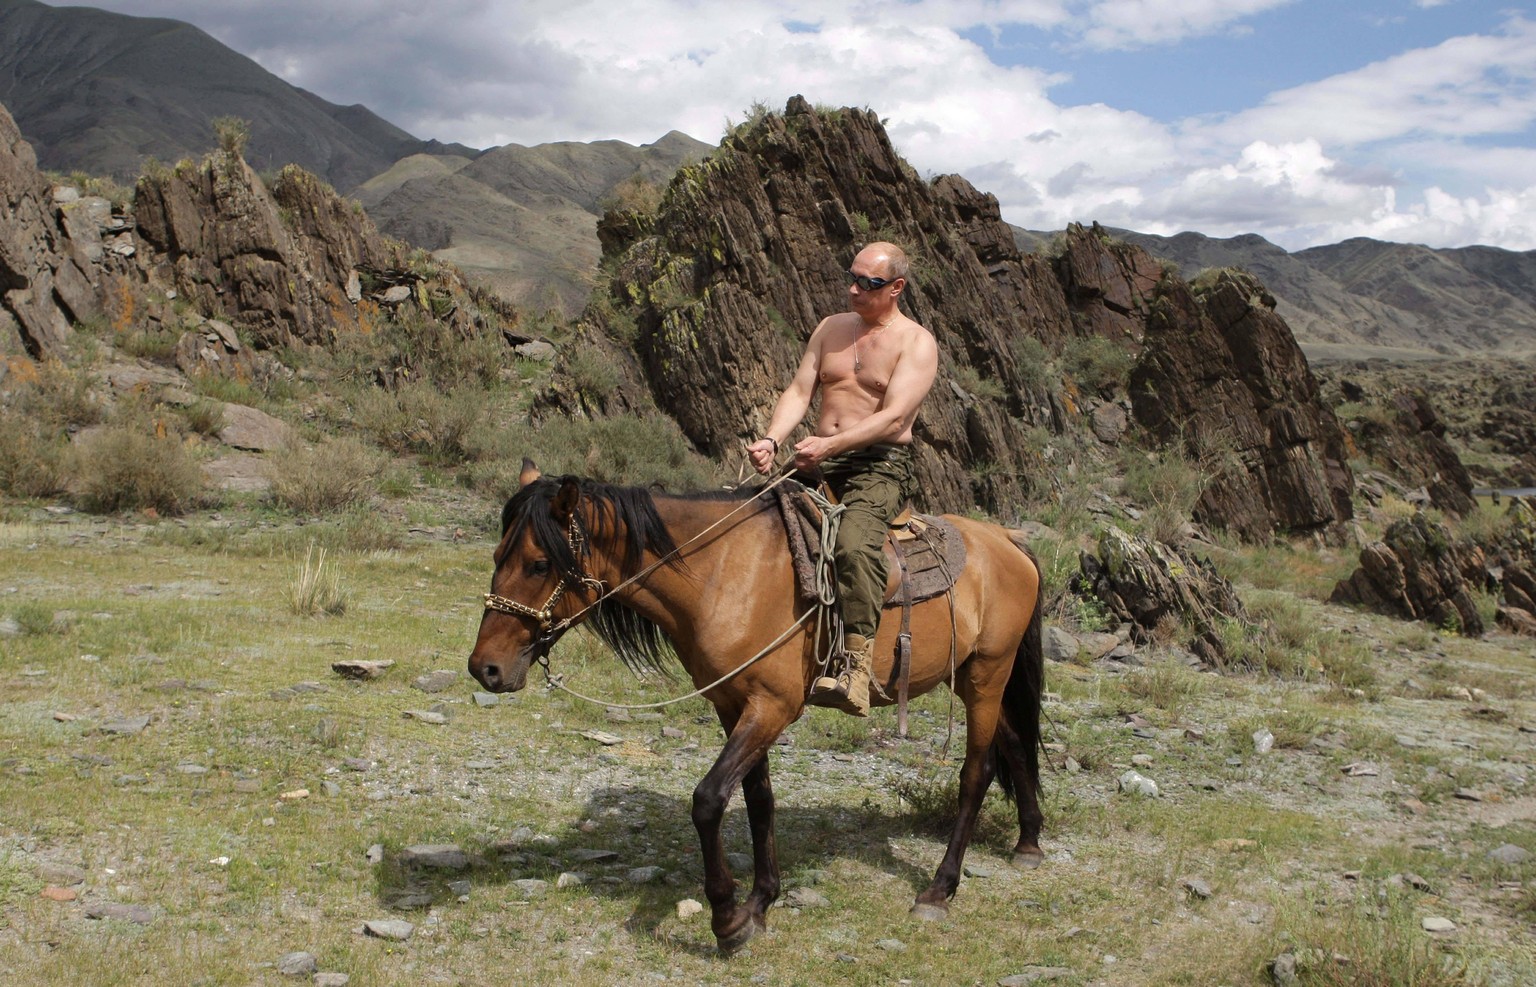 Putin mit nacktem Oberkörper, hoch zu Ross – das soll zeigen, wie gesund und fitt der russische Präsident ist.